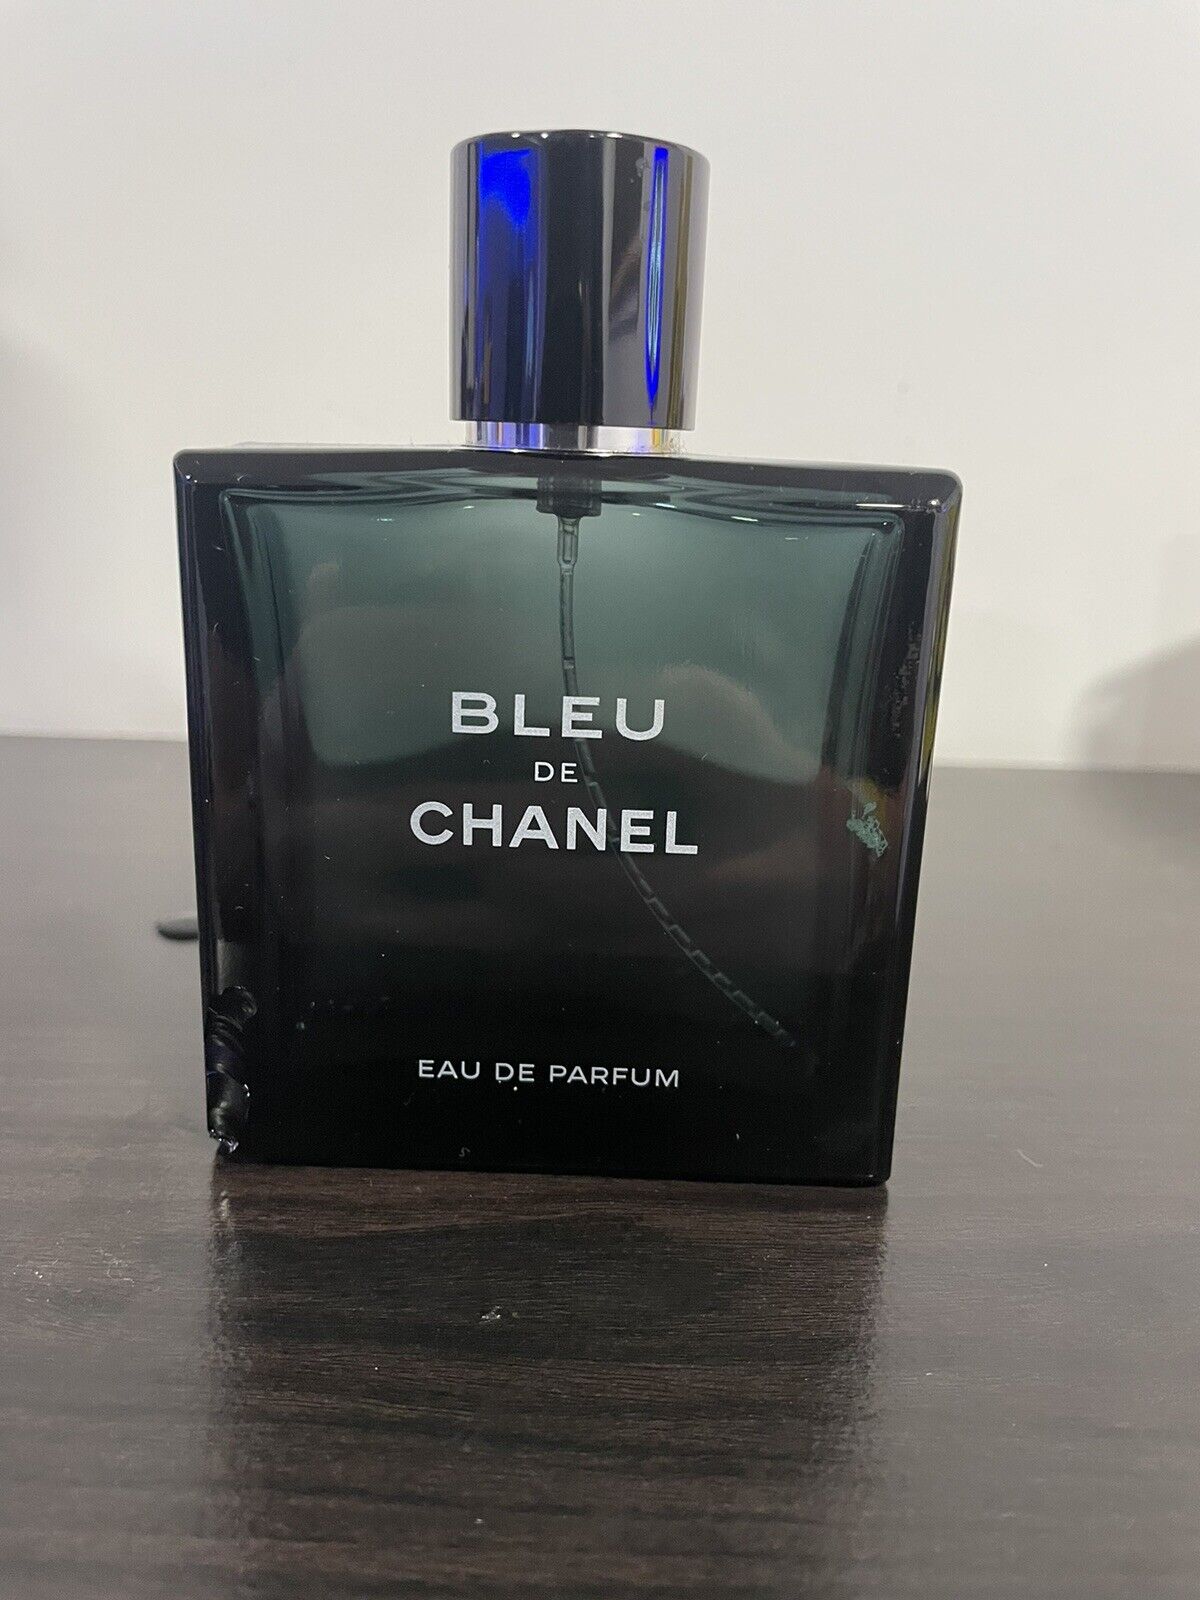 Slightly Chipped and Used EMPTY Bleu de Chanel Eau de Parfum 3.3/ 100ml Bottle